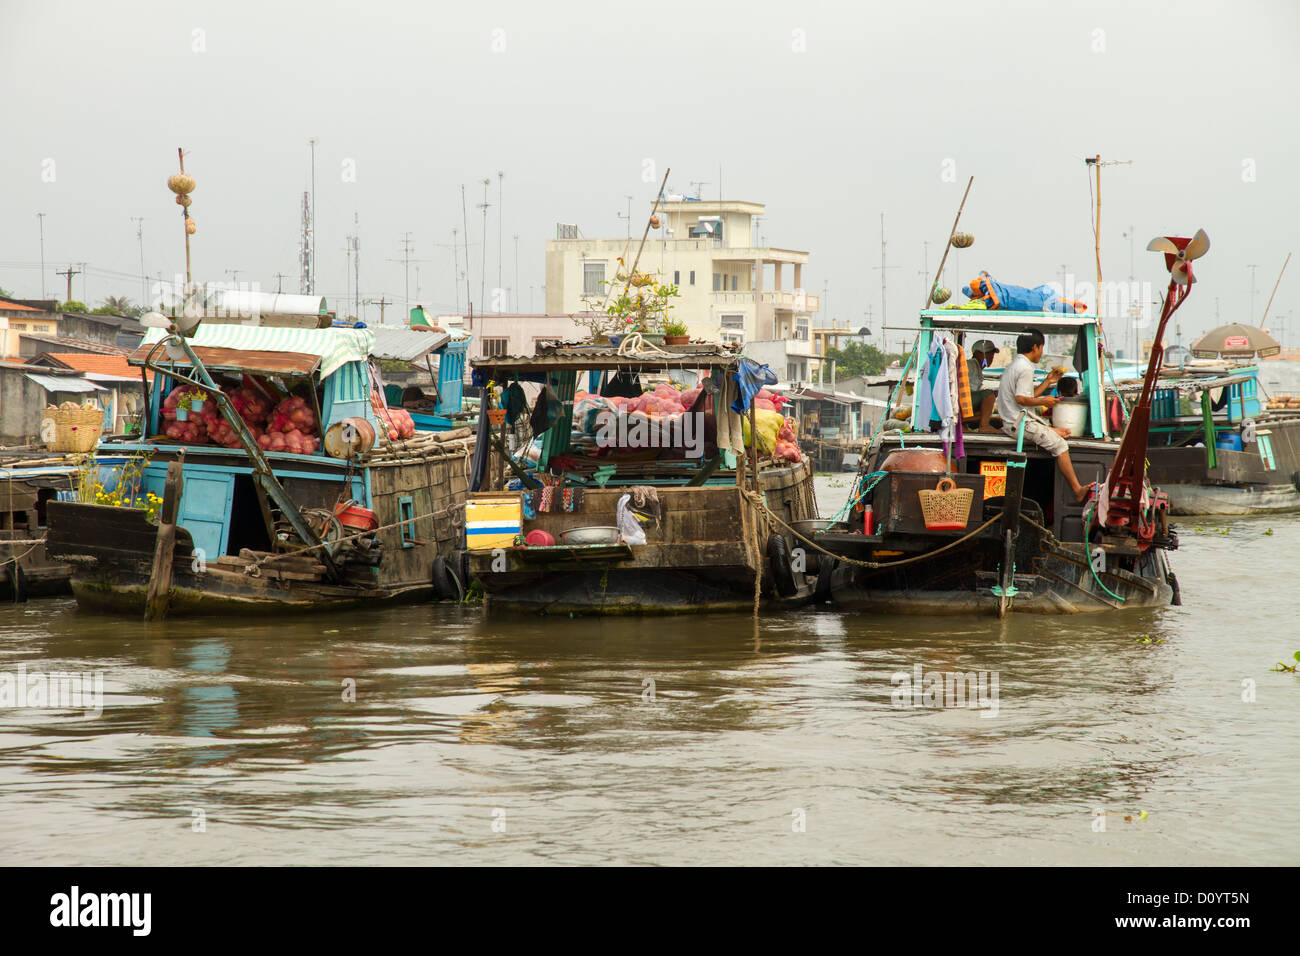 Leben am Mekong-Delta auf dem schwimmenden Markt von Cai Be in Vietnam. Stockfoto